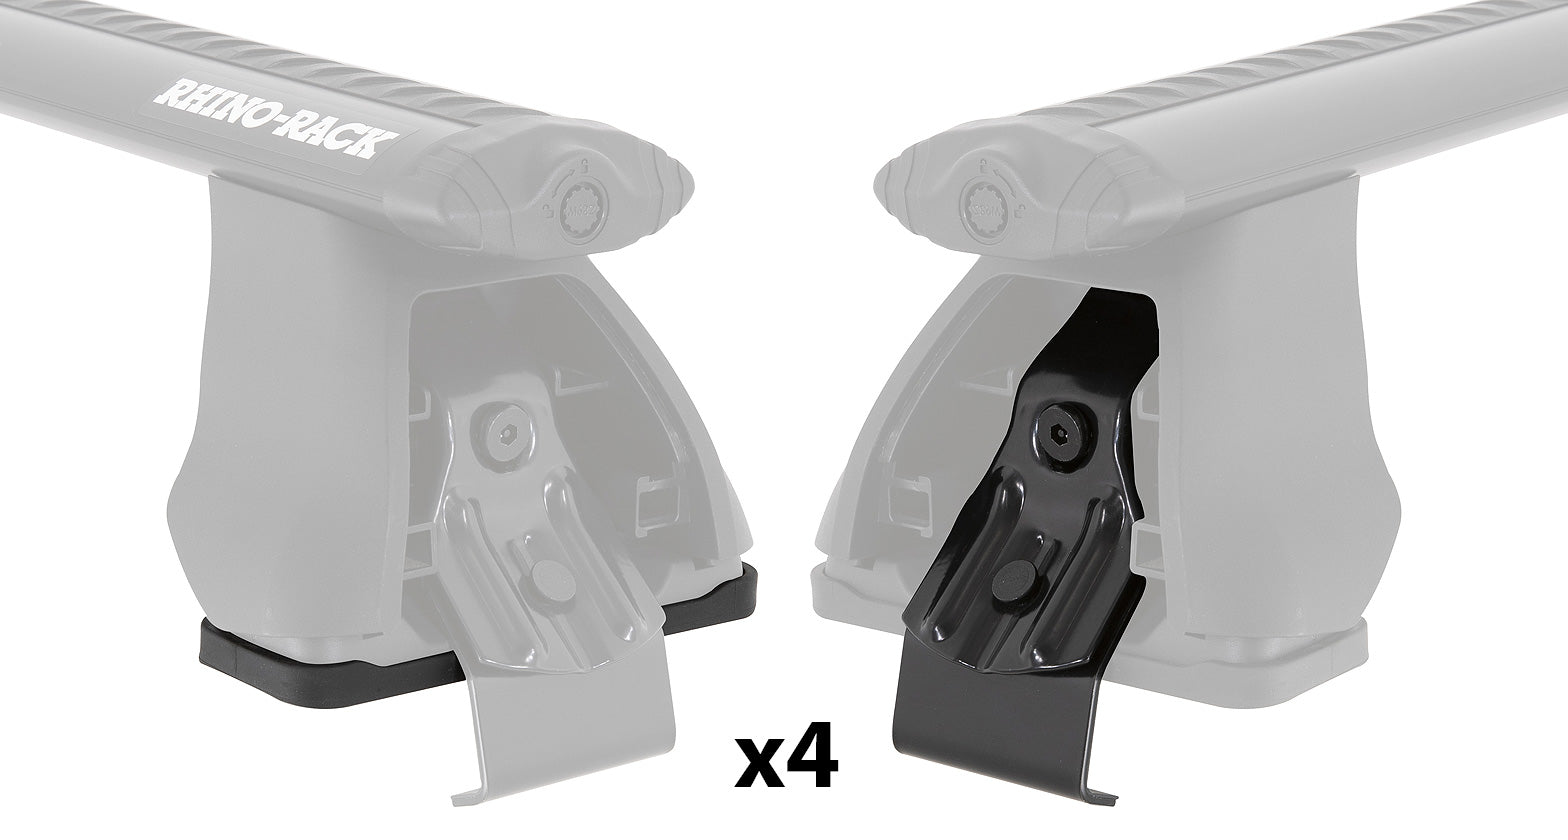 PAD & CLAMP KIT FOR RHINO 2500 MULTI FIT - DK110